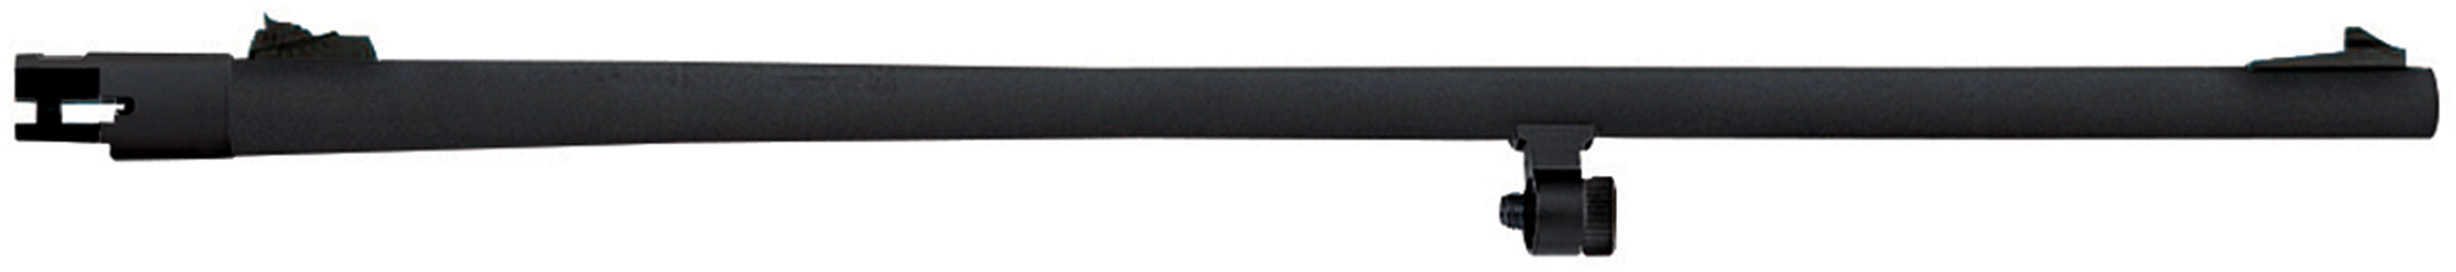 Mossberg 90059 500 20 Gauge 24" Blued Adjustable Rifle